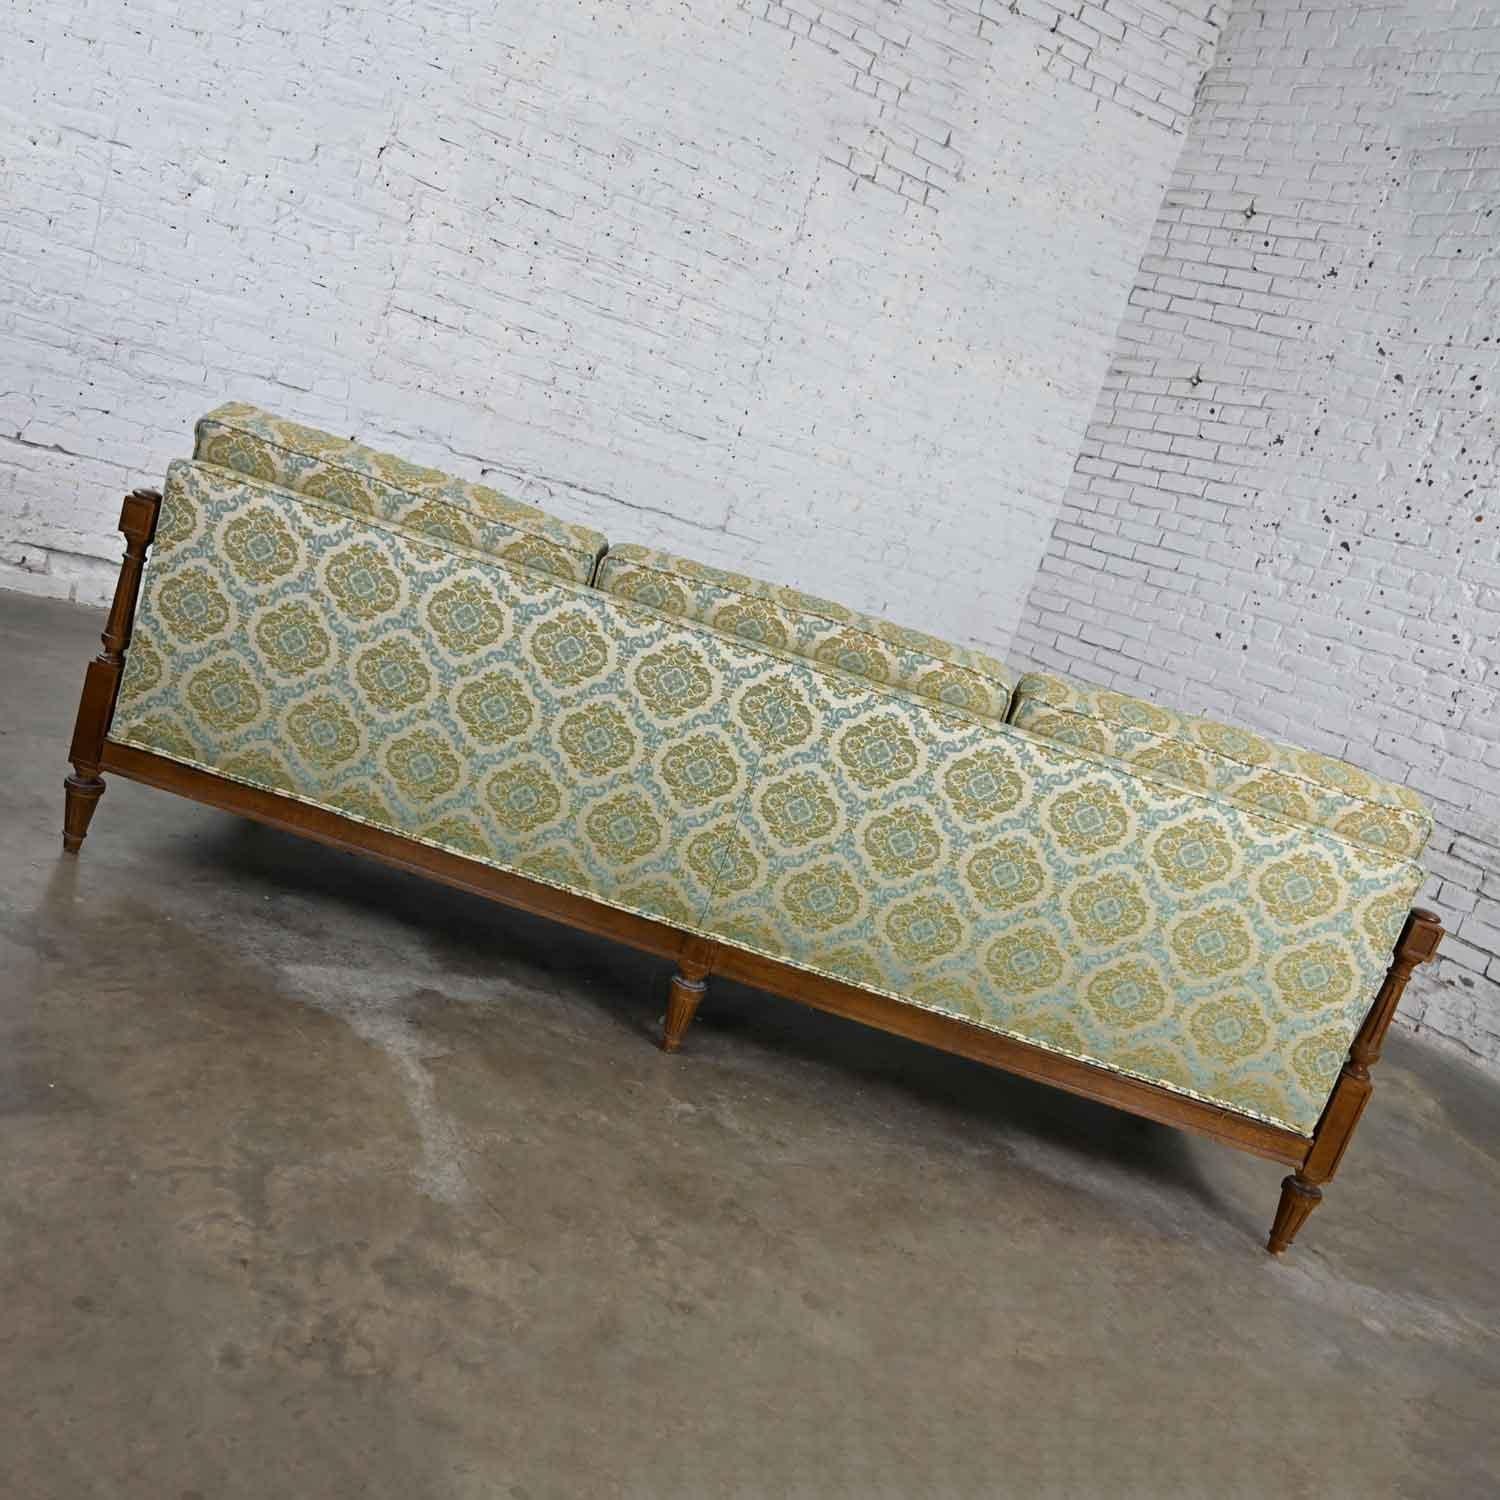 Vintage Mediterranean Spanish Revival Style Sofa Wood Details by American Furn 11